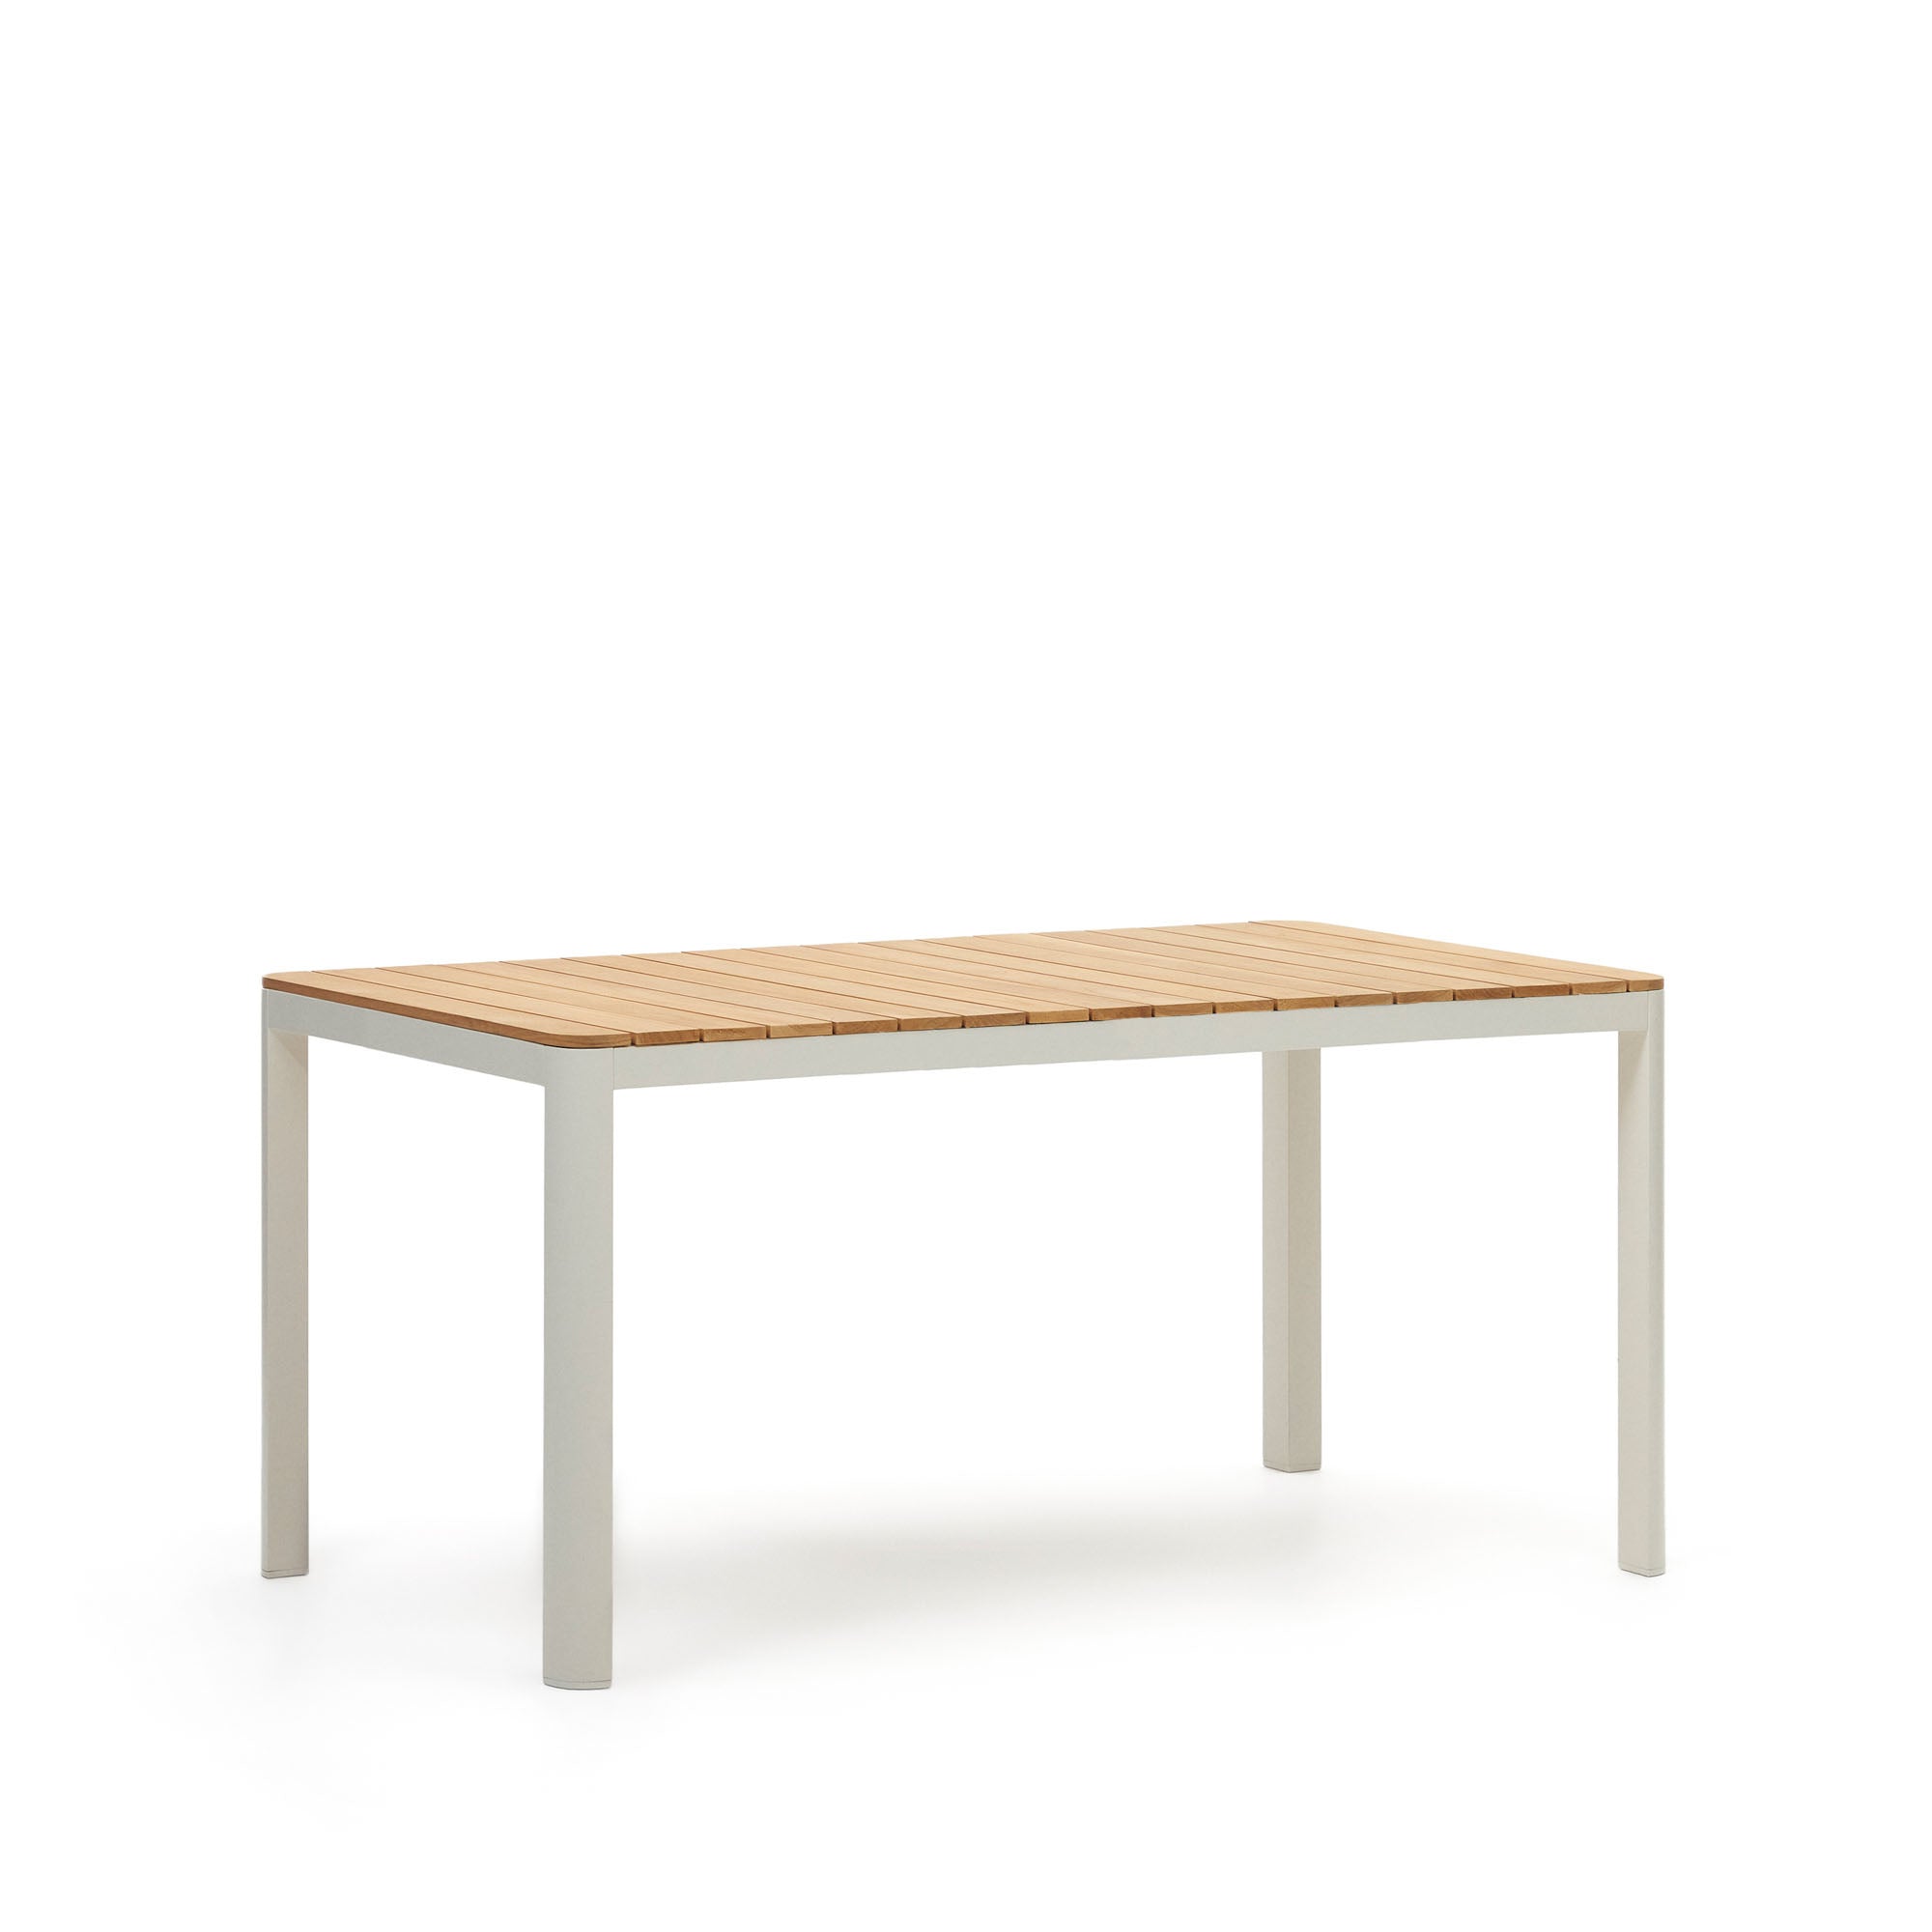 Bona alumínium és tömör teakfa asztal, 100%-ban kültéri használatra alkalmas, fehér kivitelben, 160 x 90 cm